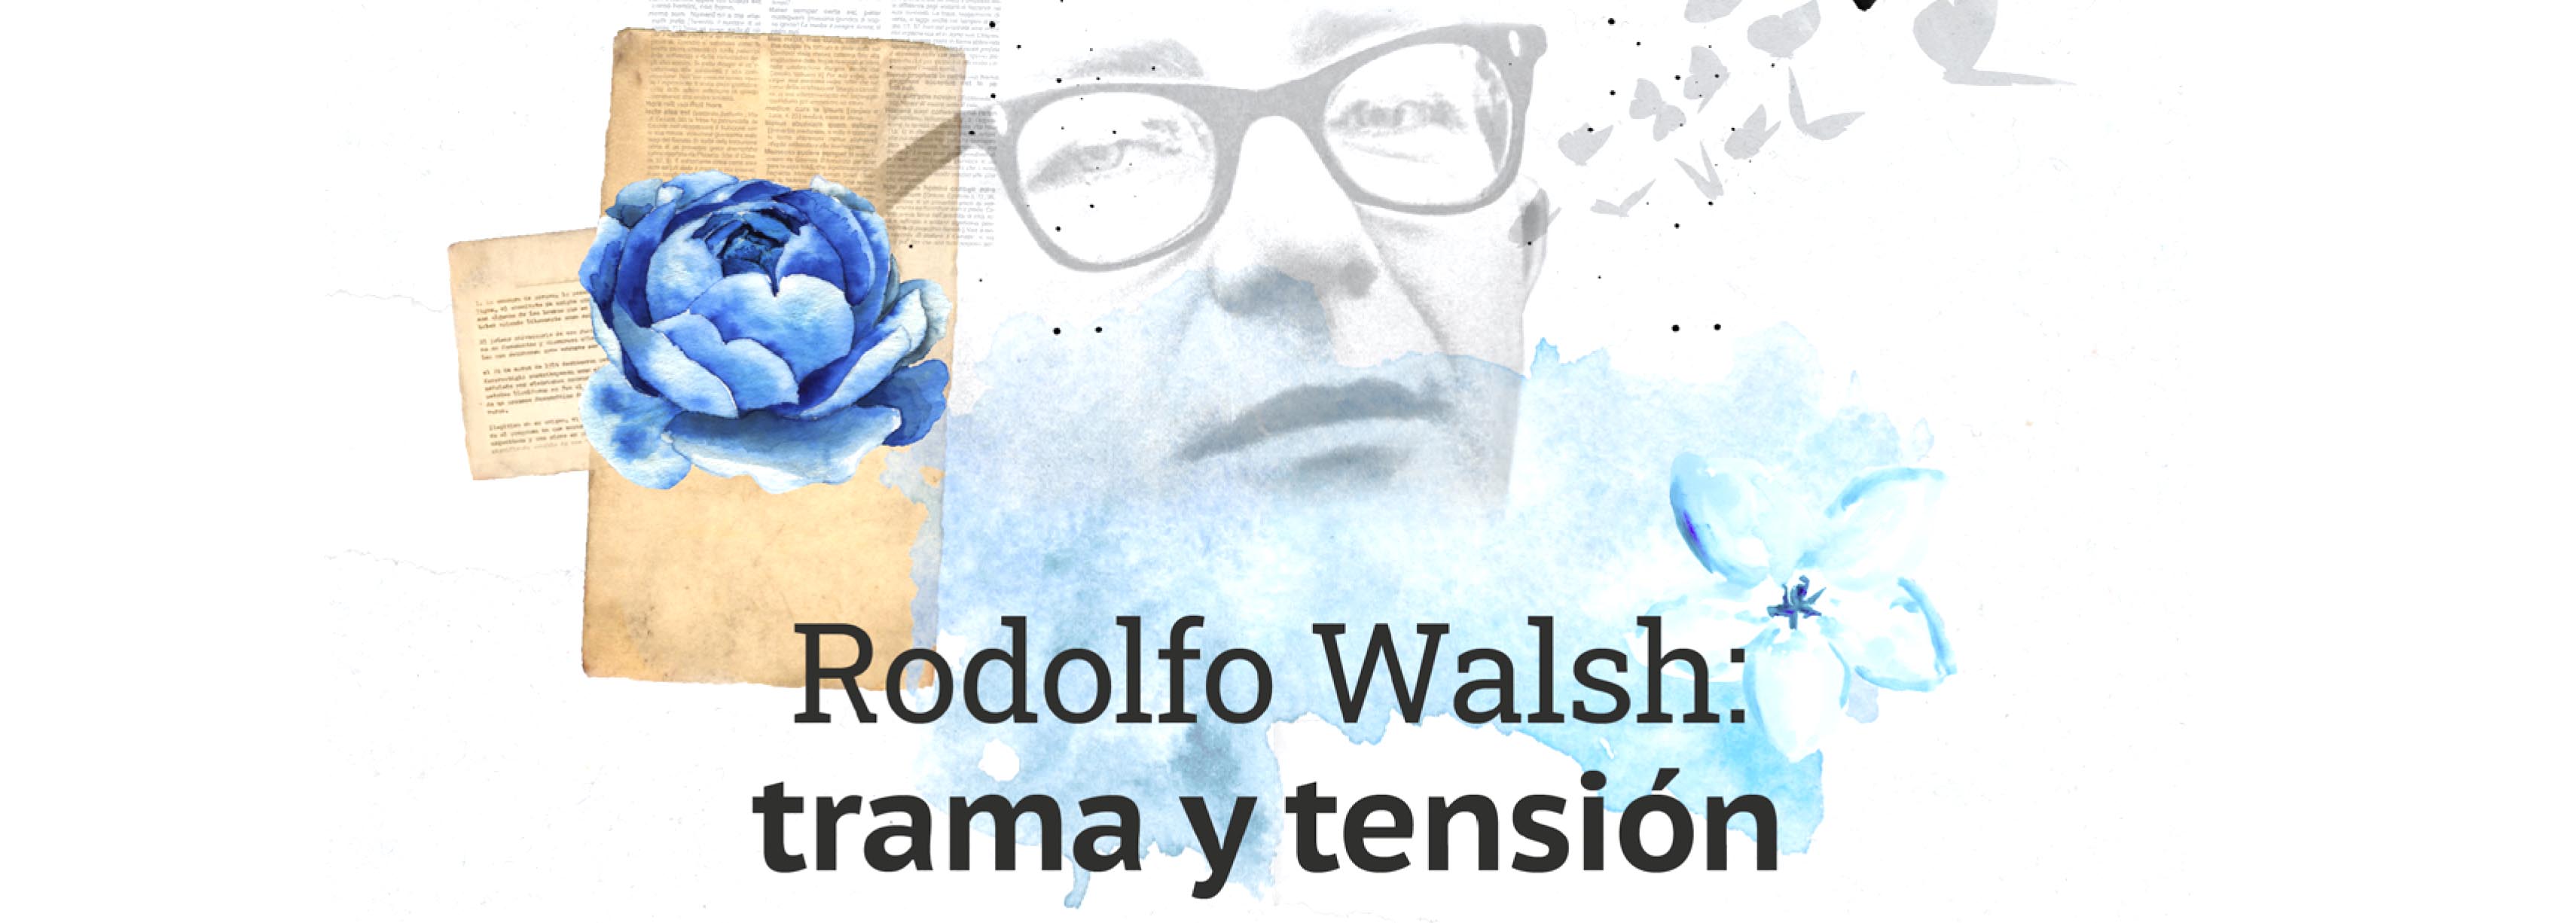 Rodolfo Walsh: trama y tensión